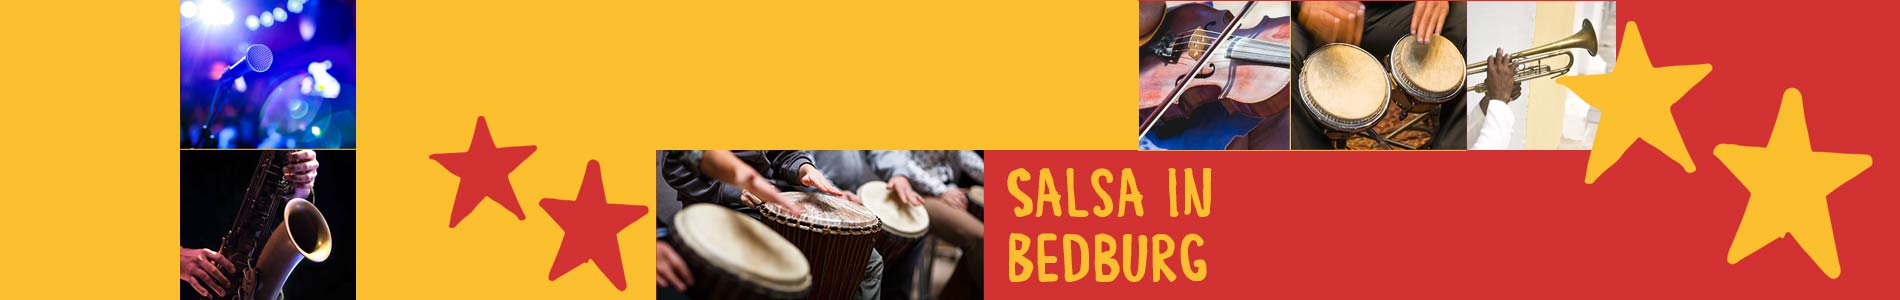 Salsa in Bedburg – Salsa lernen und tanzen, Tanzkurse, Partys, Veranstaltungen